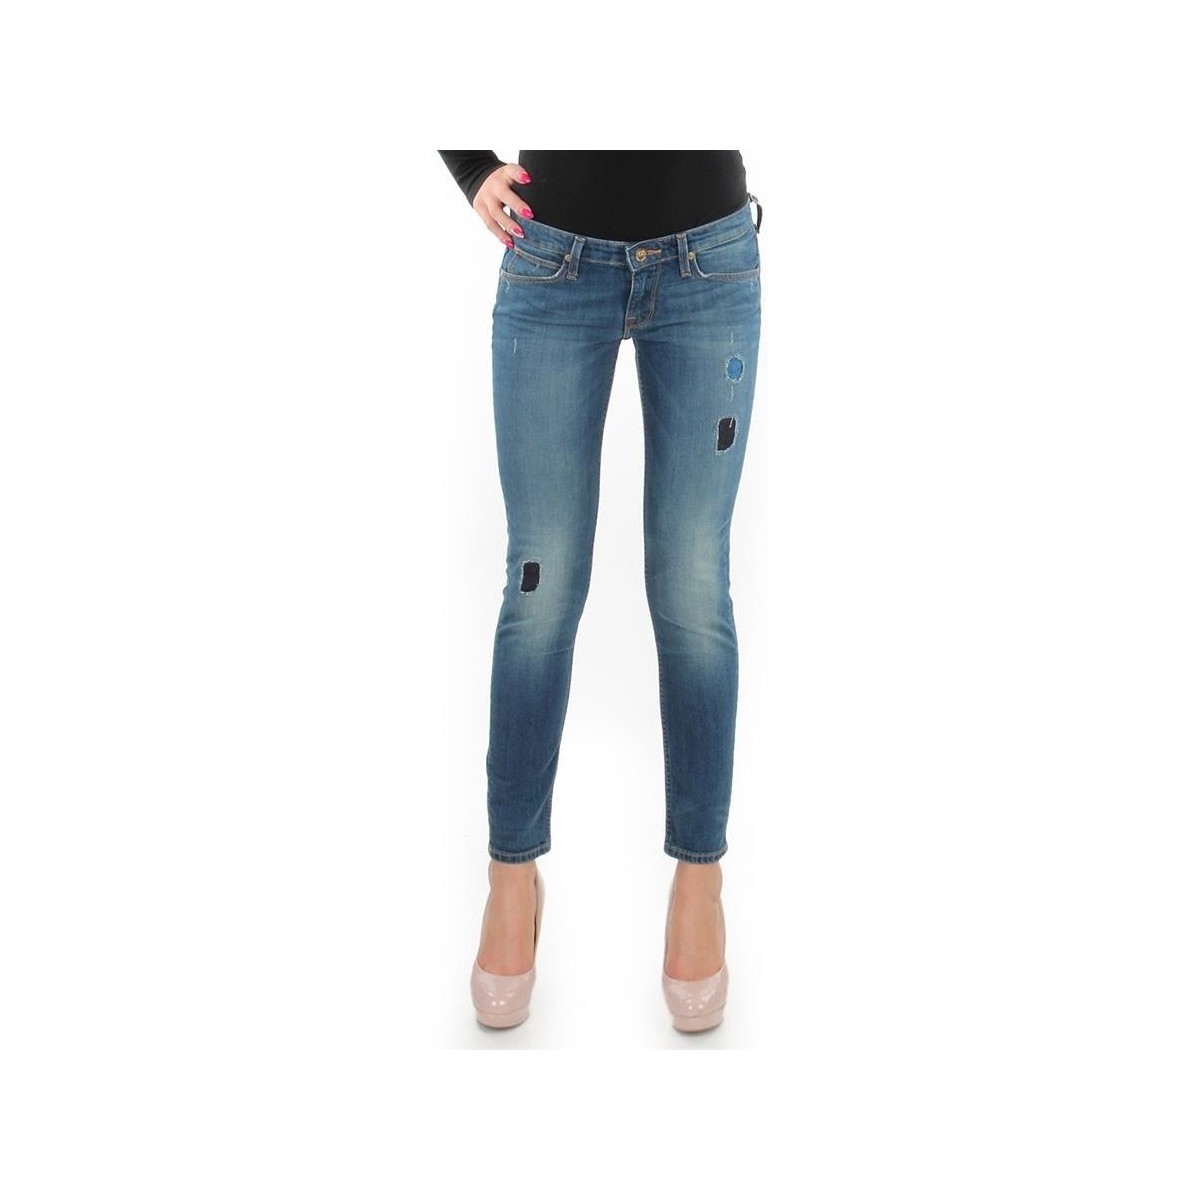 Υφασμάτινα Γυναίκα Skinny jeans Lee Lynn Skinny L357DNXA Μπλέ